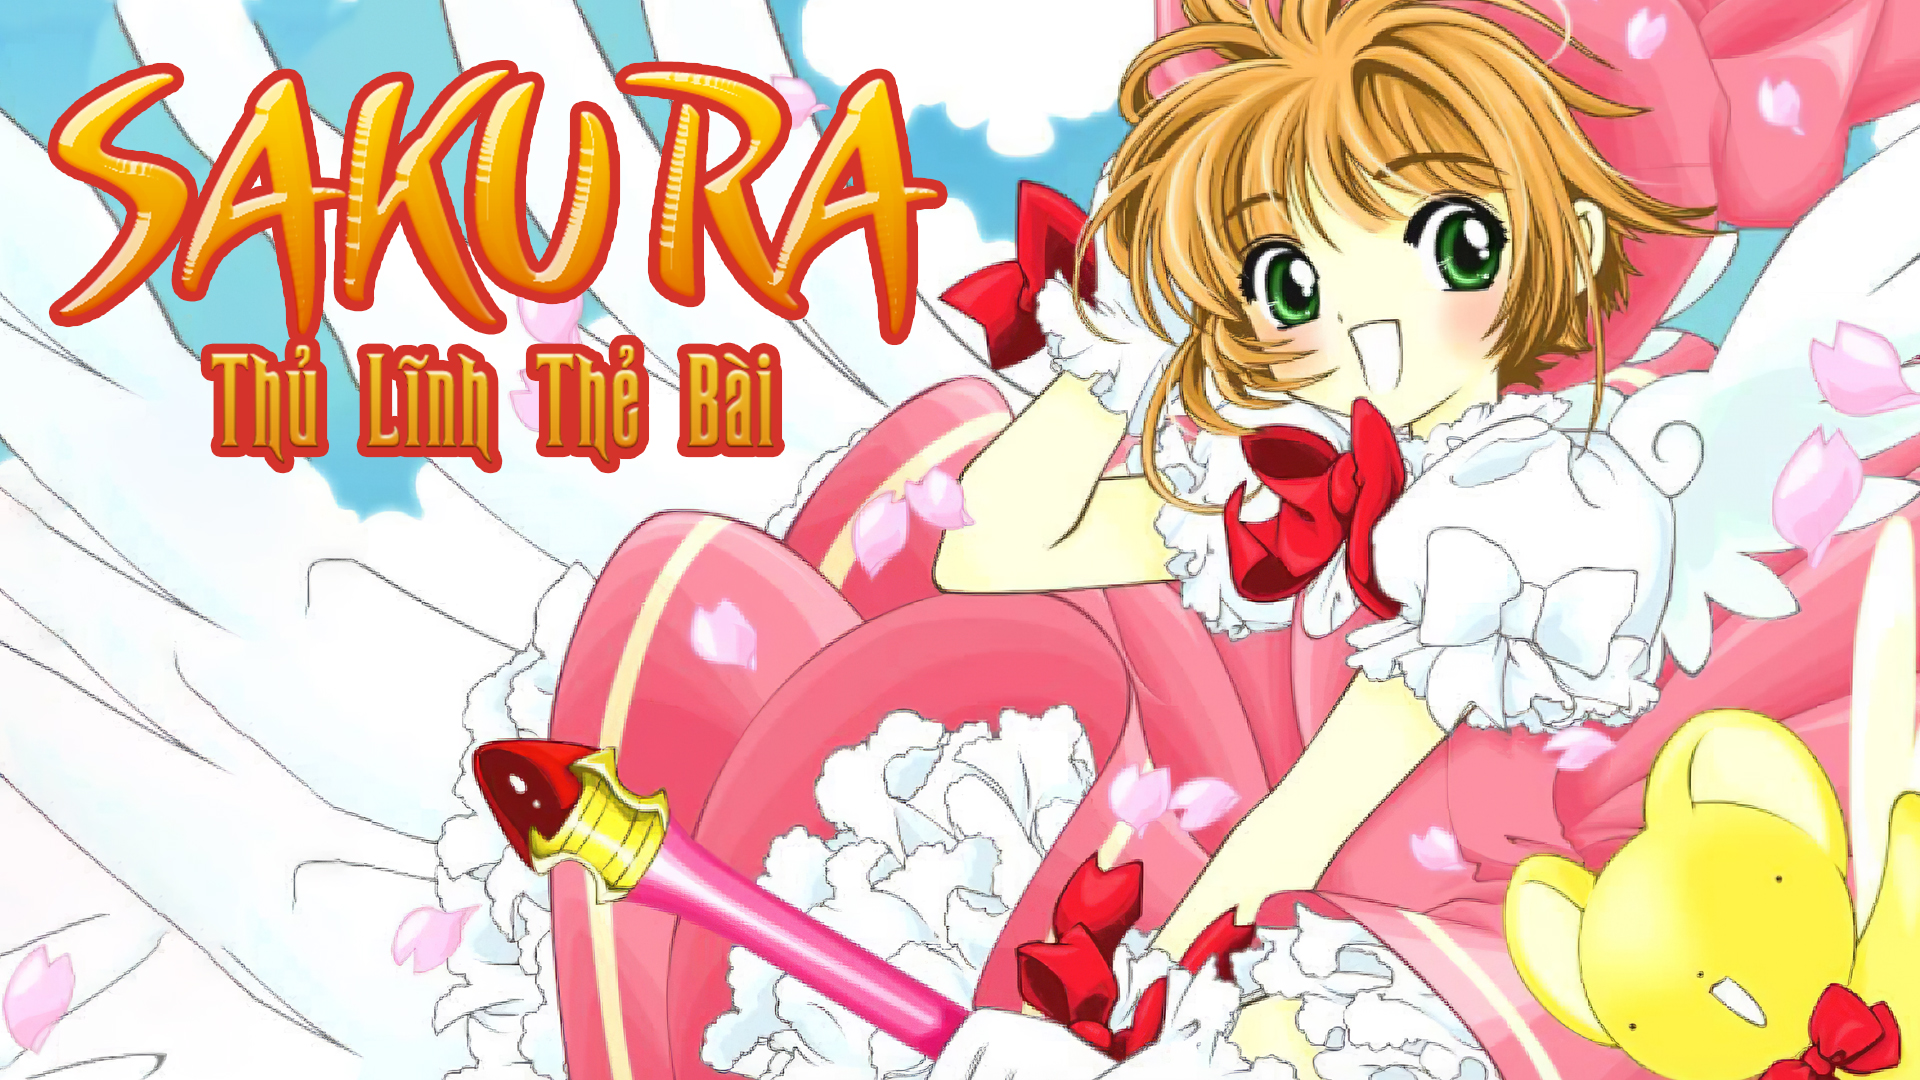 Thủ Lĩnh Thẻ Bài Sakura phần 2 ra mắt anime vào đầu năm 2018